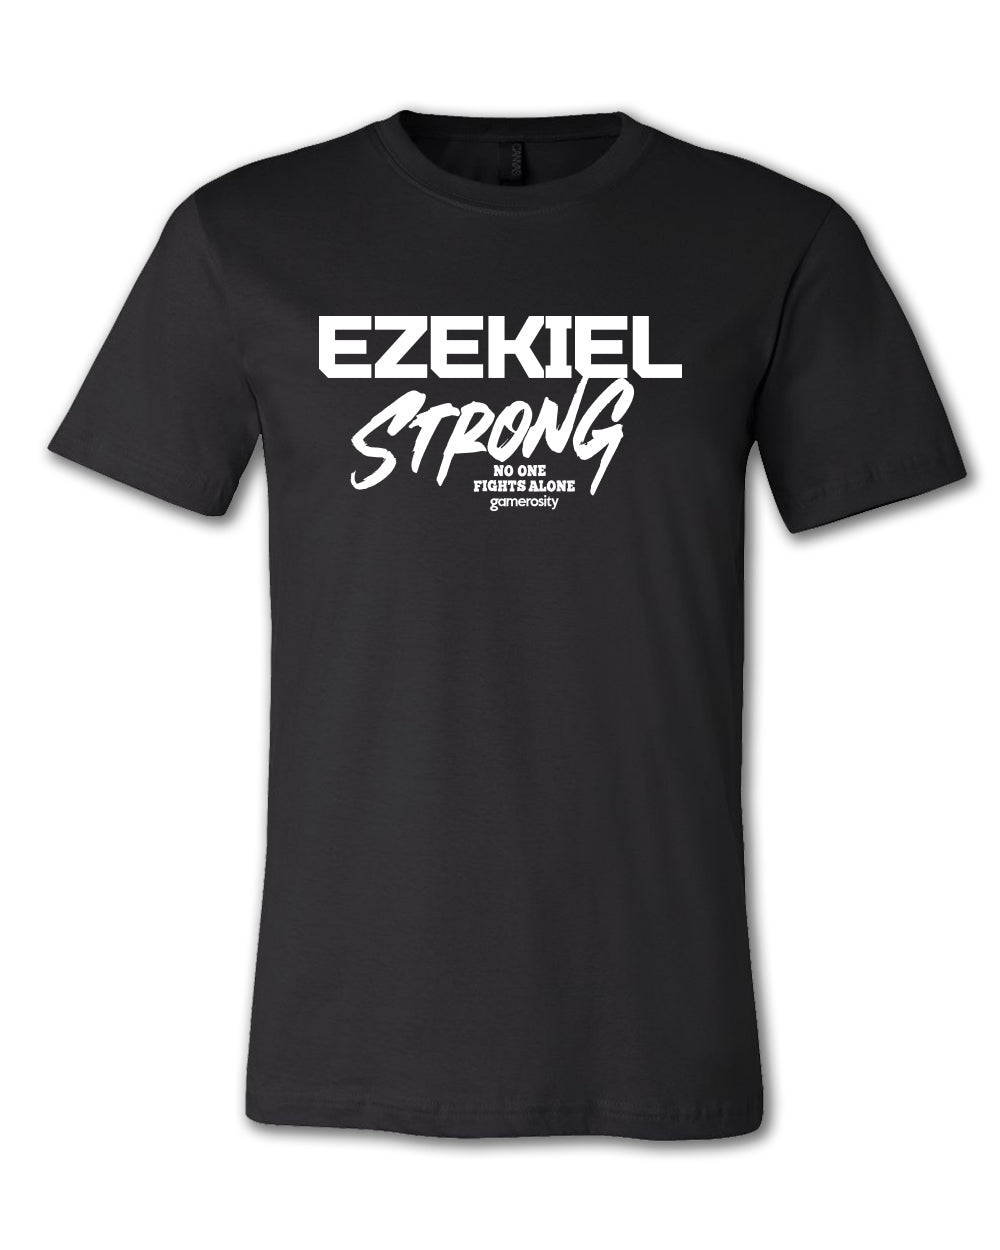 Ezekiel Strong